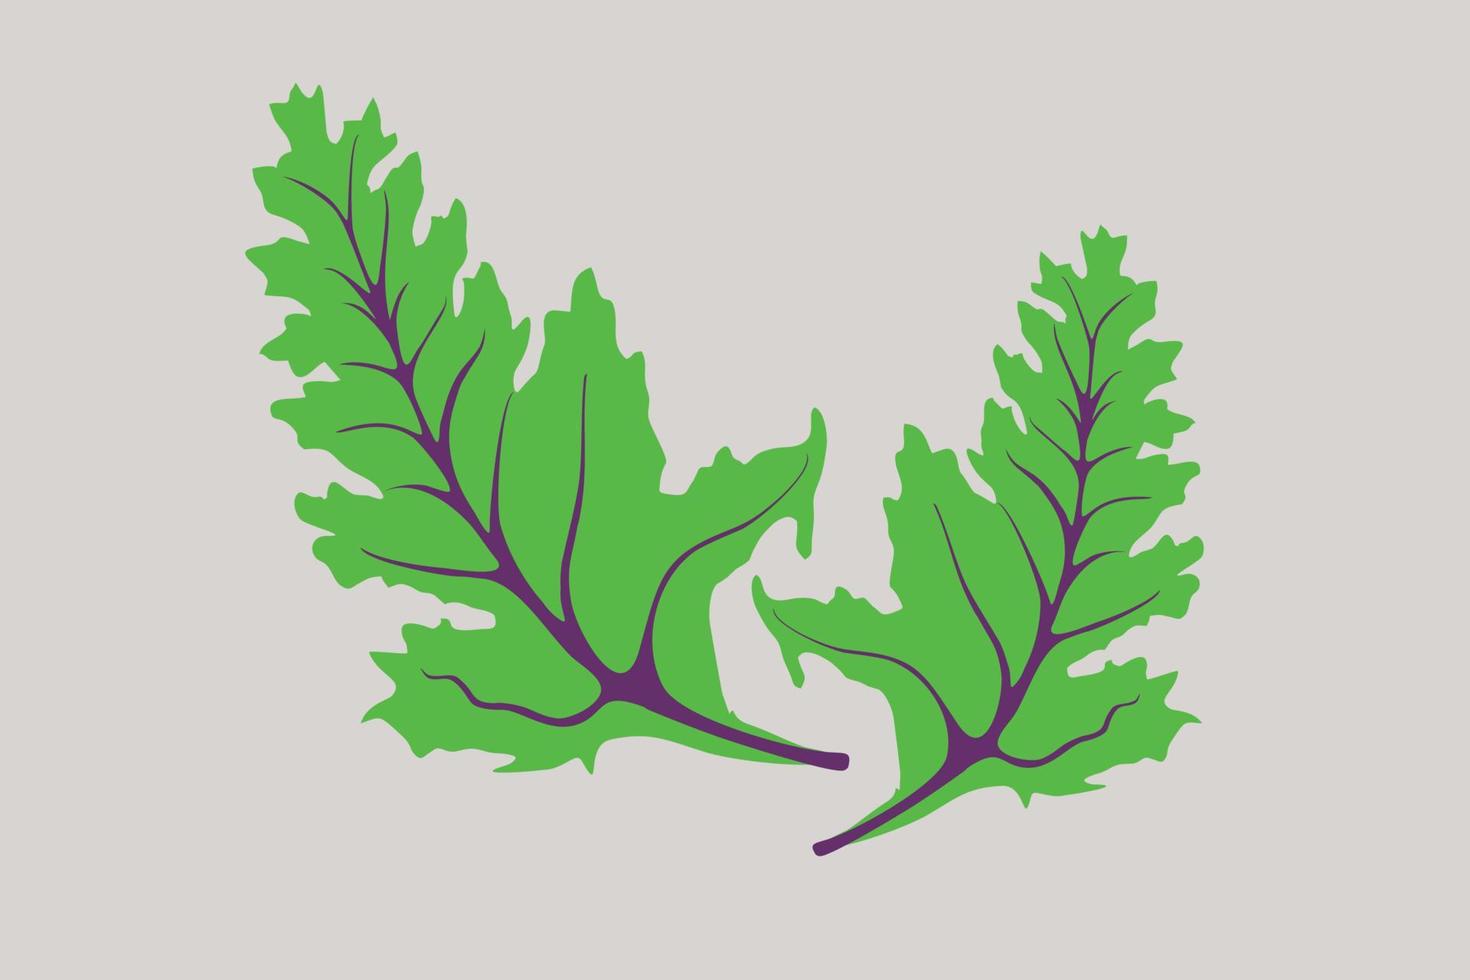 col rizada, verdura de hoja verde oscuro. ilustración de vector de col de hoja.